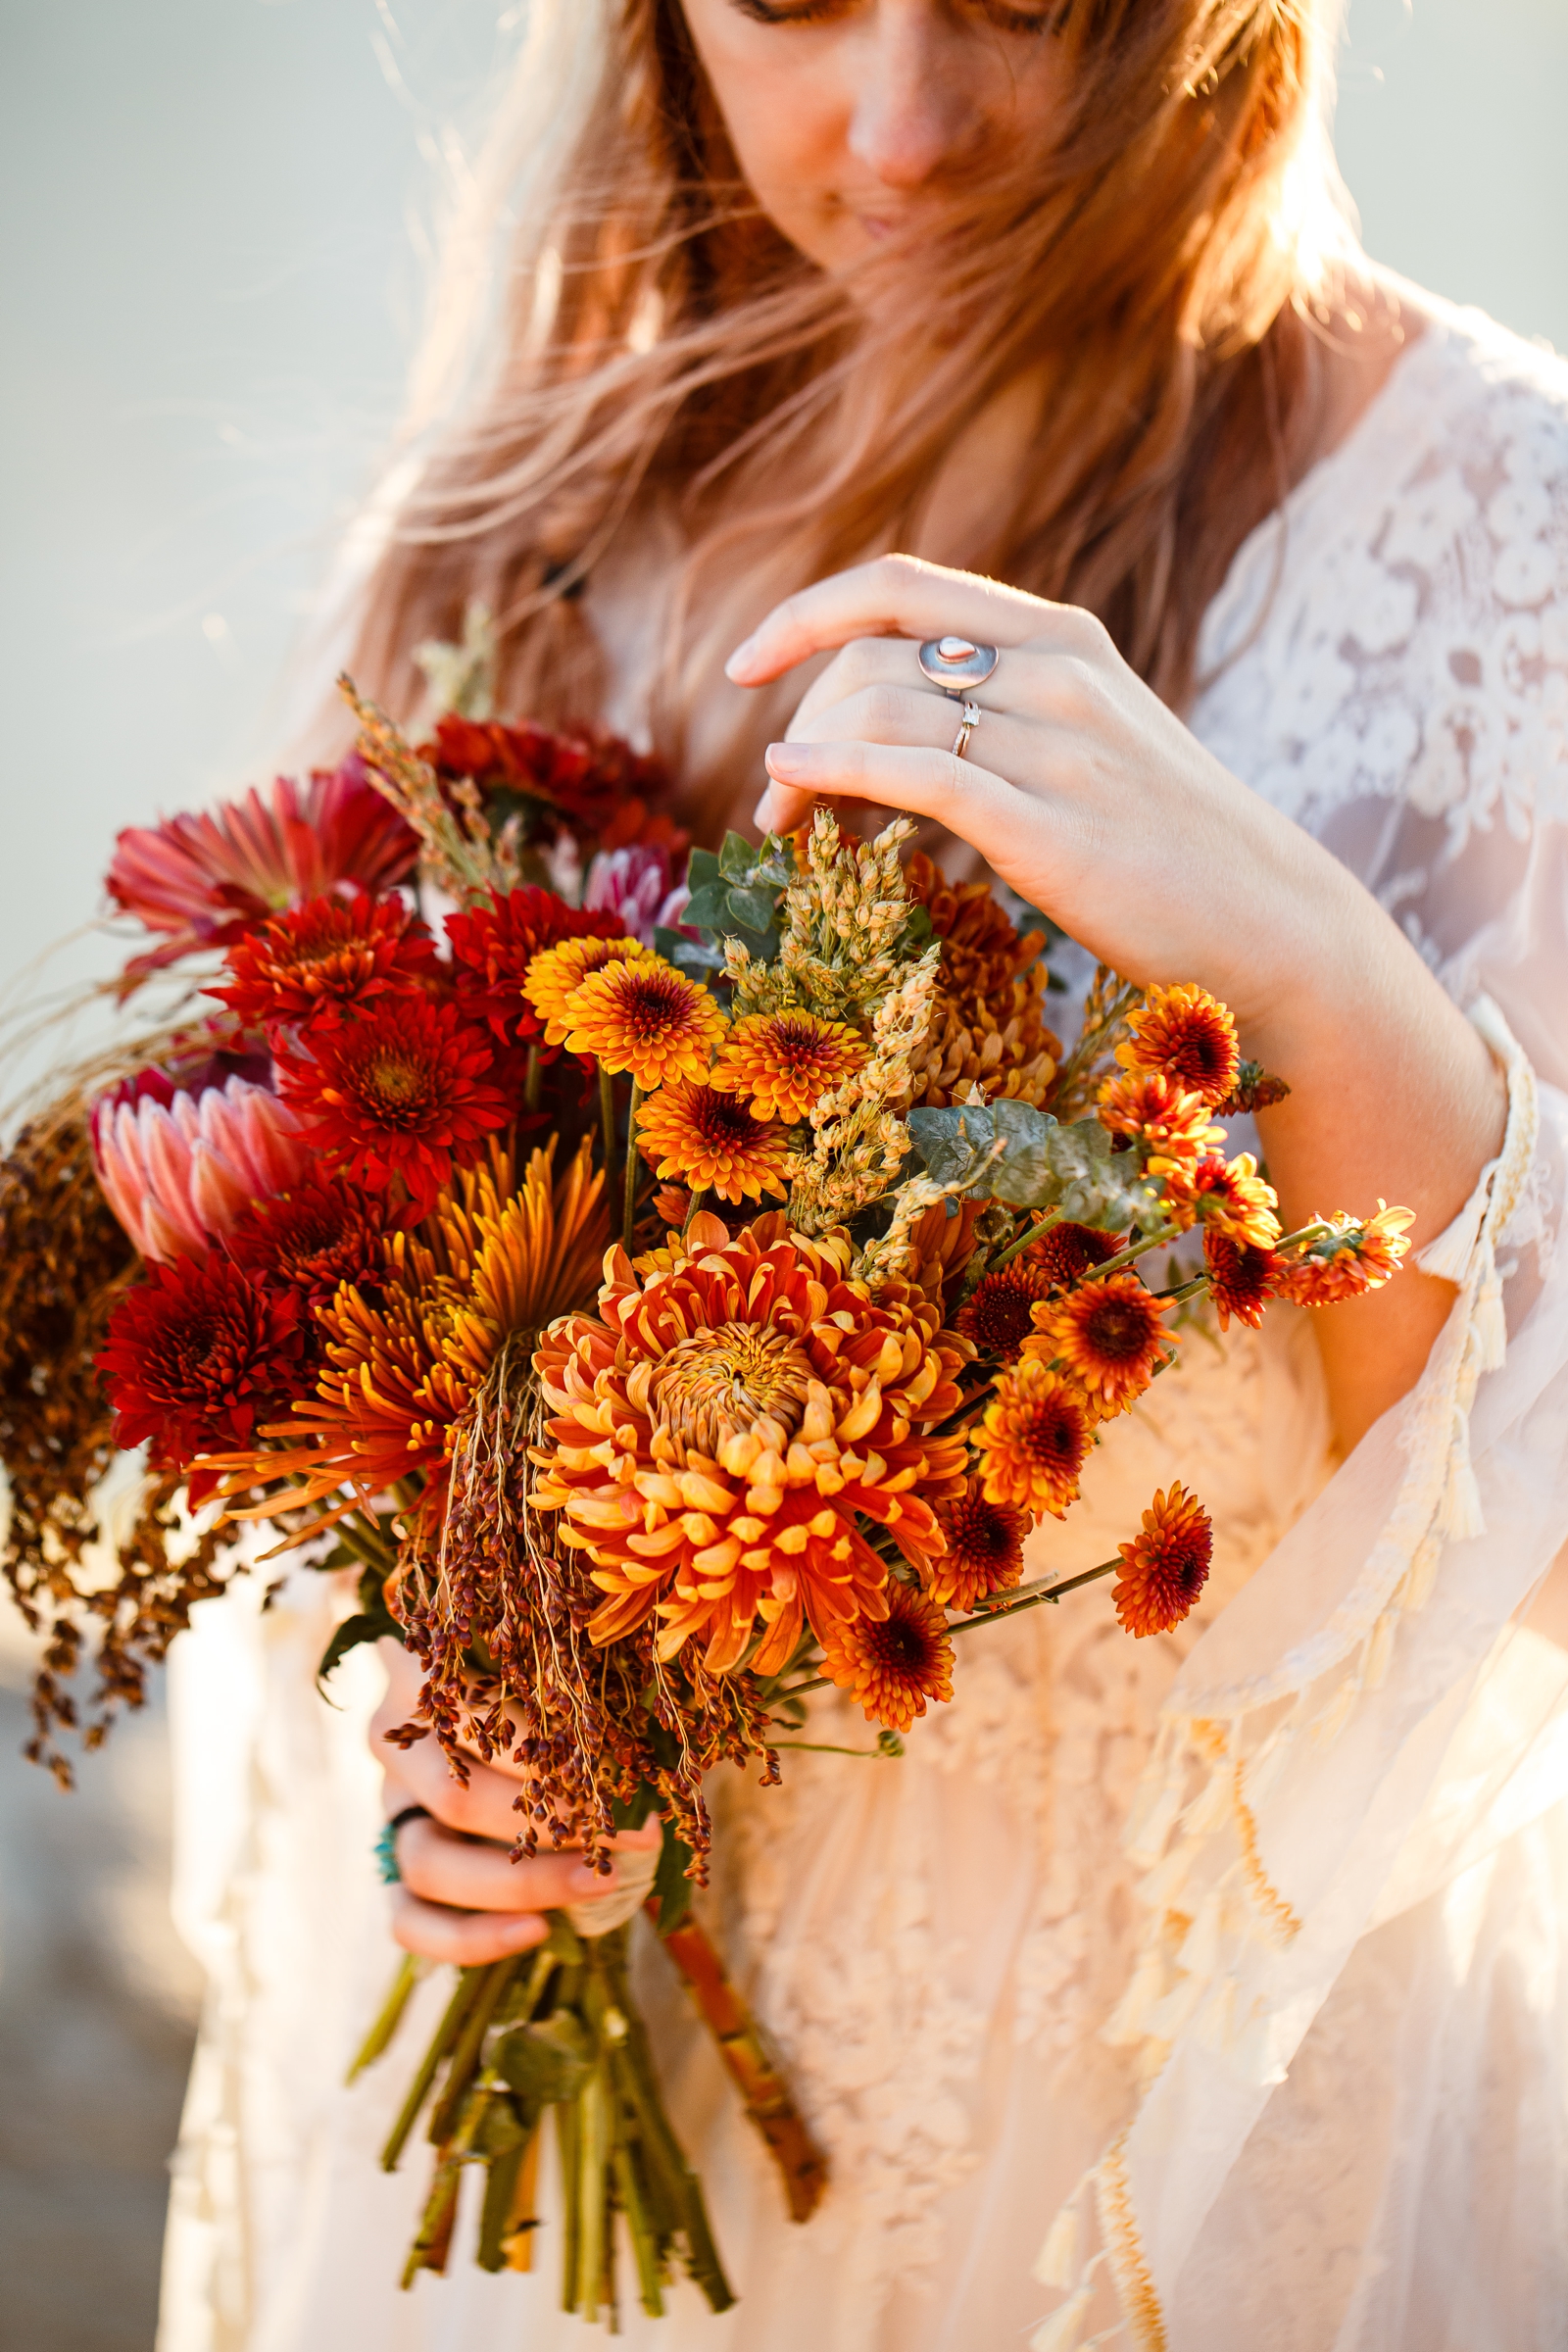 Yosemite bride with her wildflower bouquet.